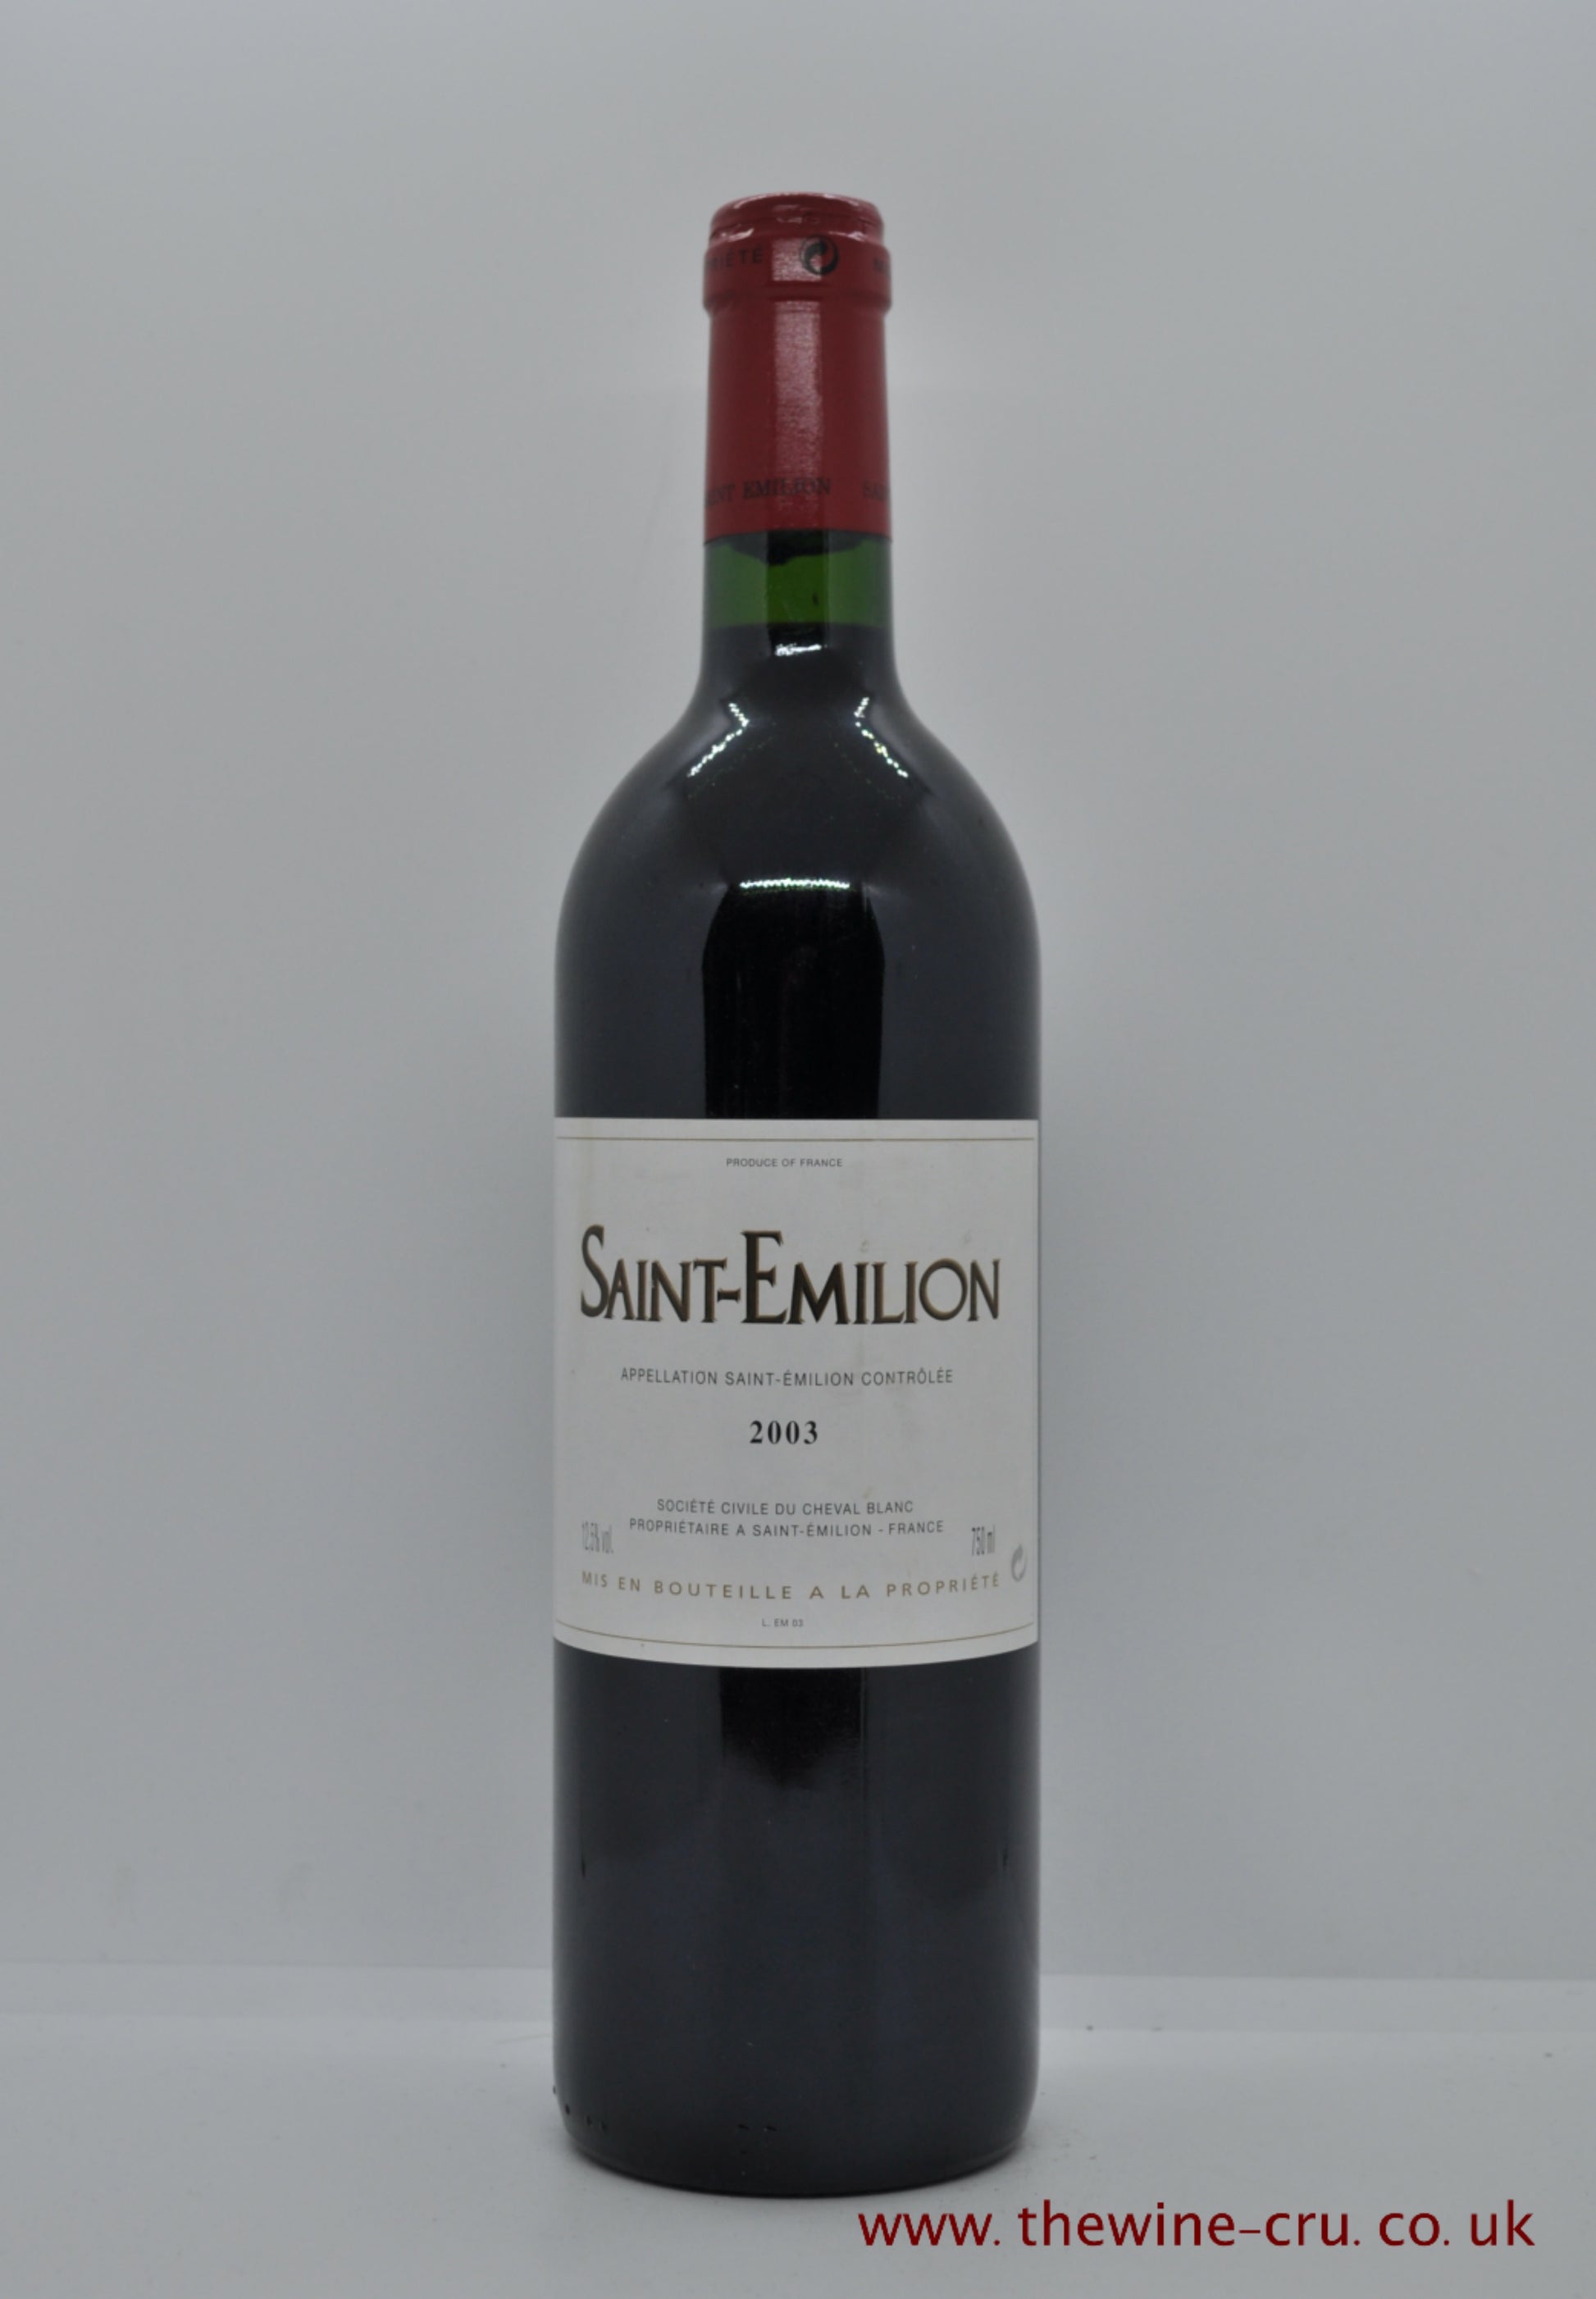 Saint Emilion Society Civile Du Cheval Blanc 2003 France Bordeaux